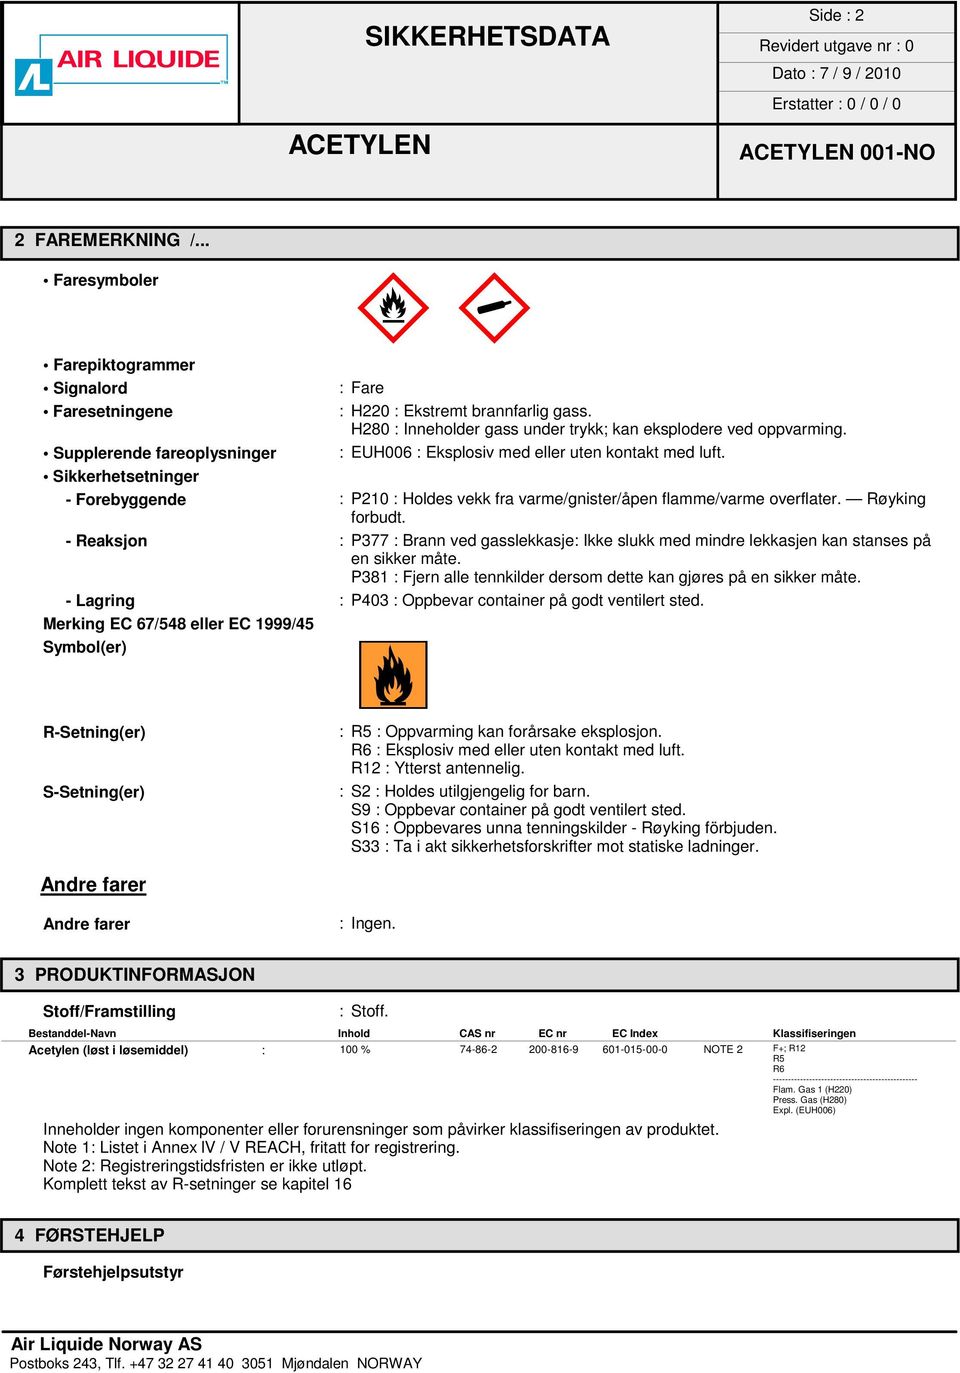 Sikkerhetsetninger - Forebyggende : P210 : Holdes vekk fra varme/gnister/åpen flamme/varme overflater. Røyking forbudt.